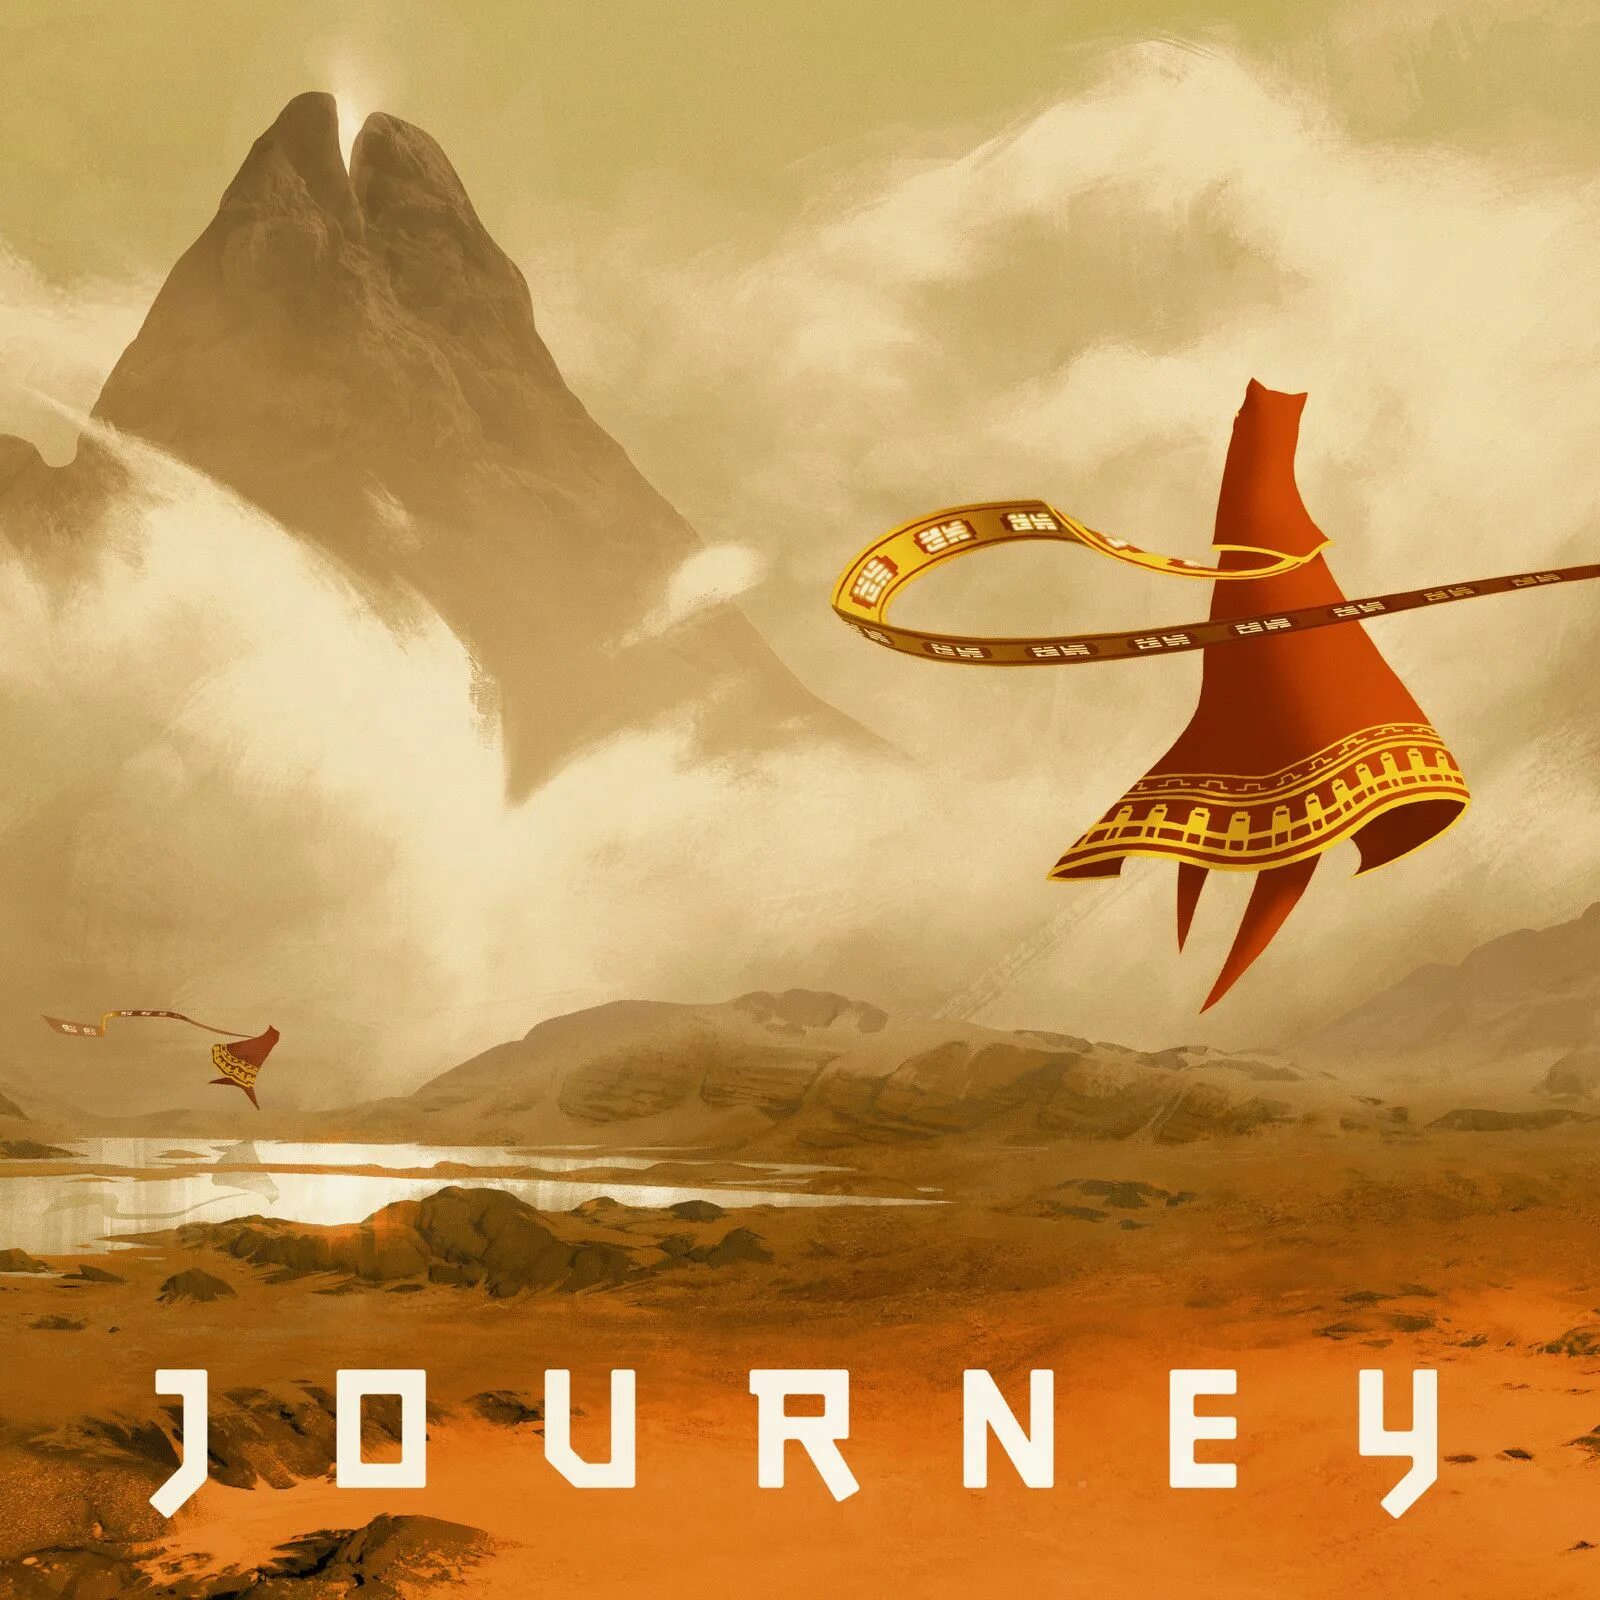 Journey сборка. Journey (игра, 2012). Journey thatgamecompany. Путешествие игра Journey. Джорни путешествие игра.